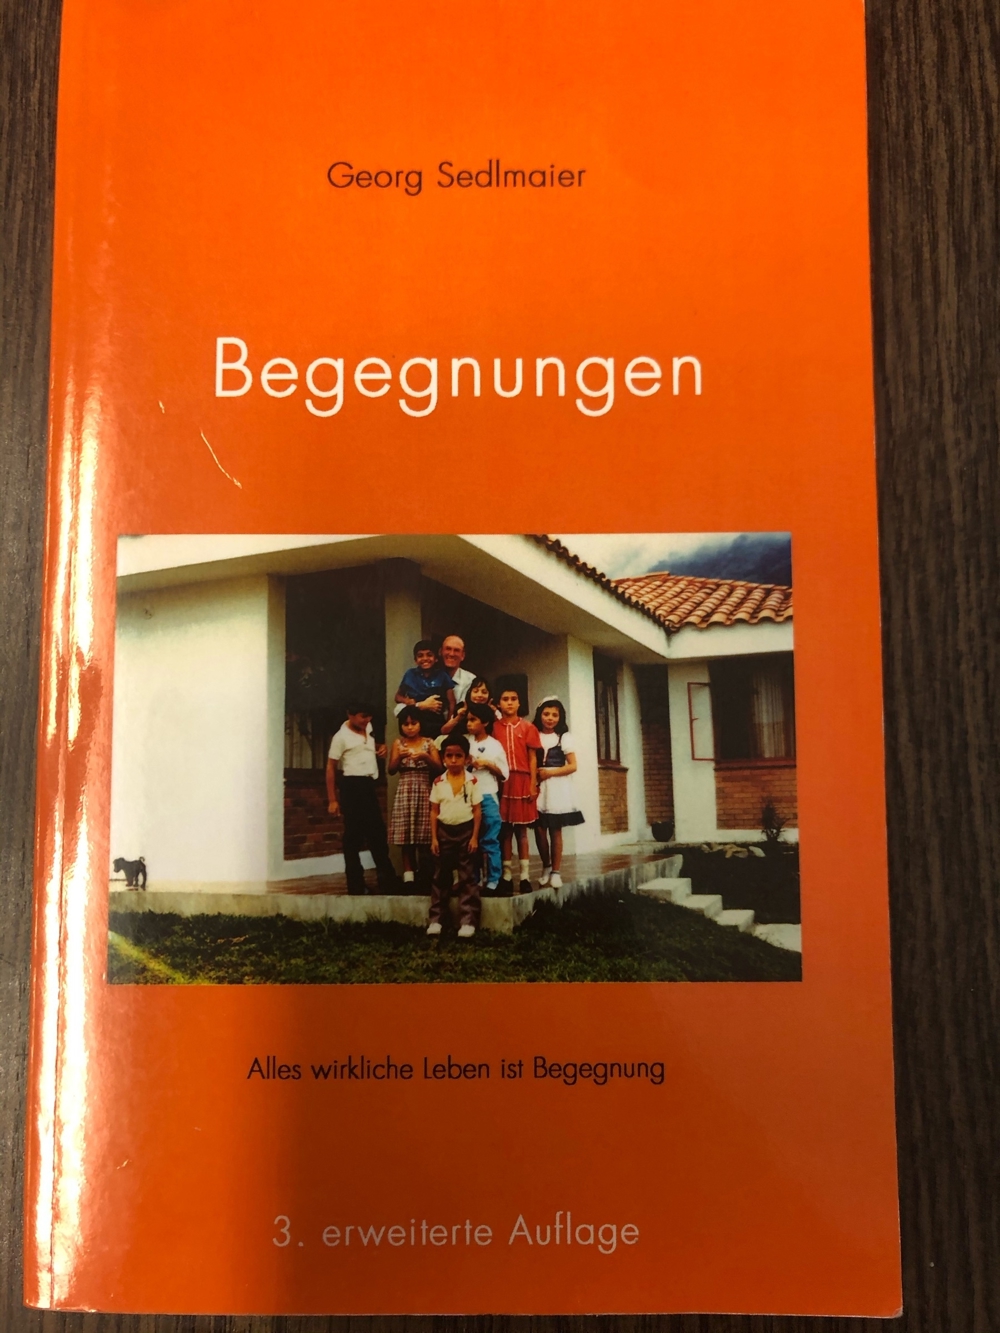 Begegnungen, Georg Sedlmaier